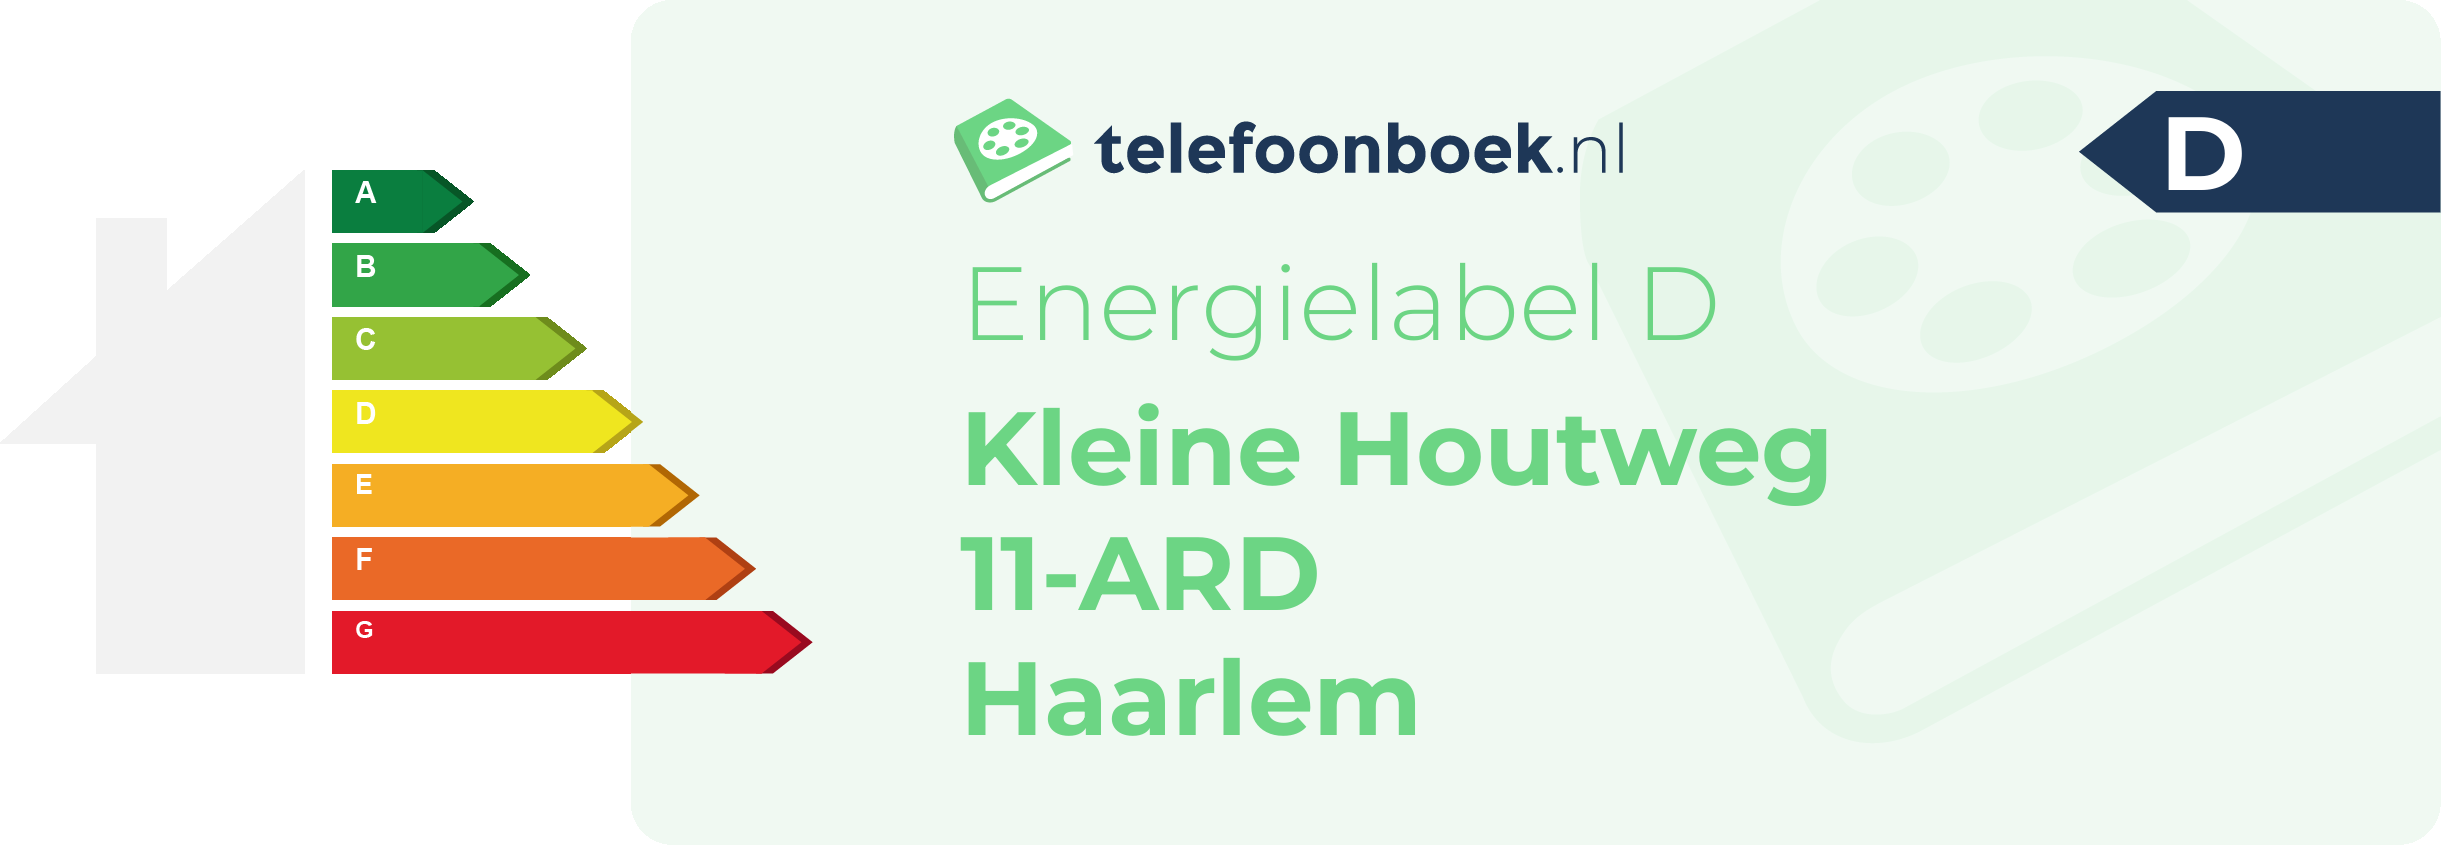 Energielabel Kleine Houtweg 11-ARD Haarlem